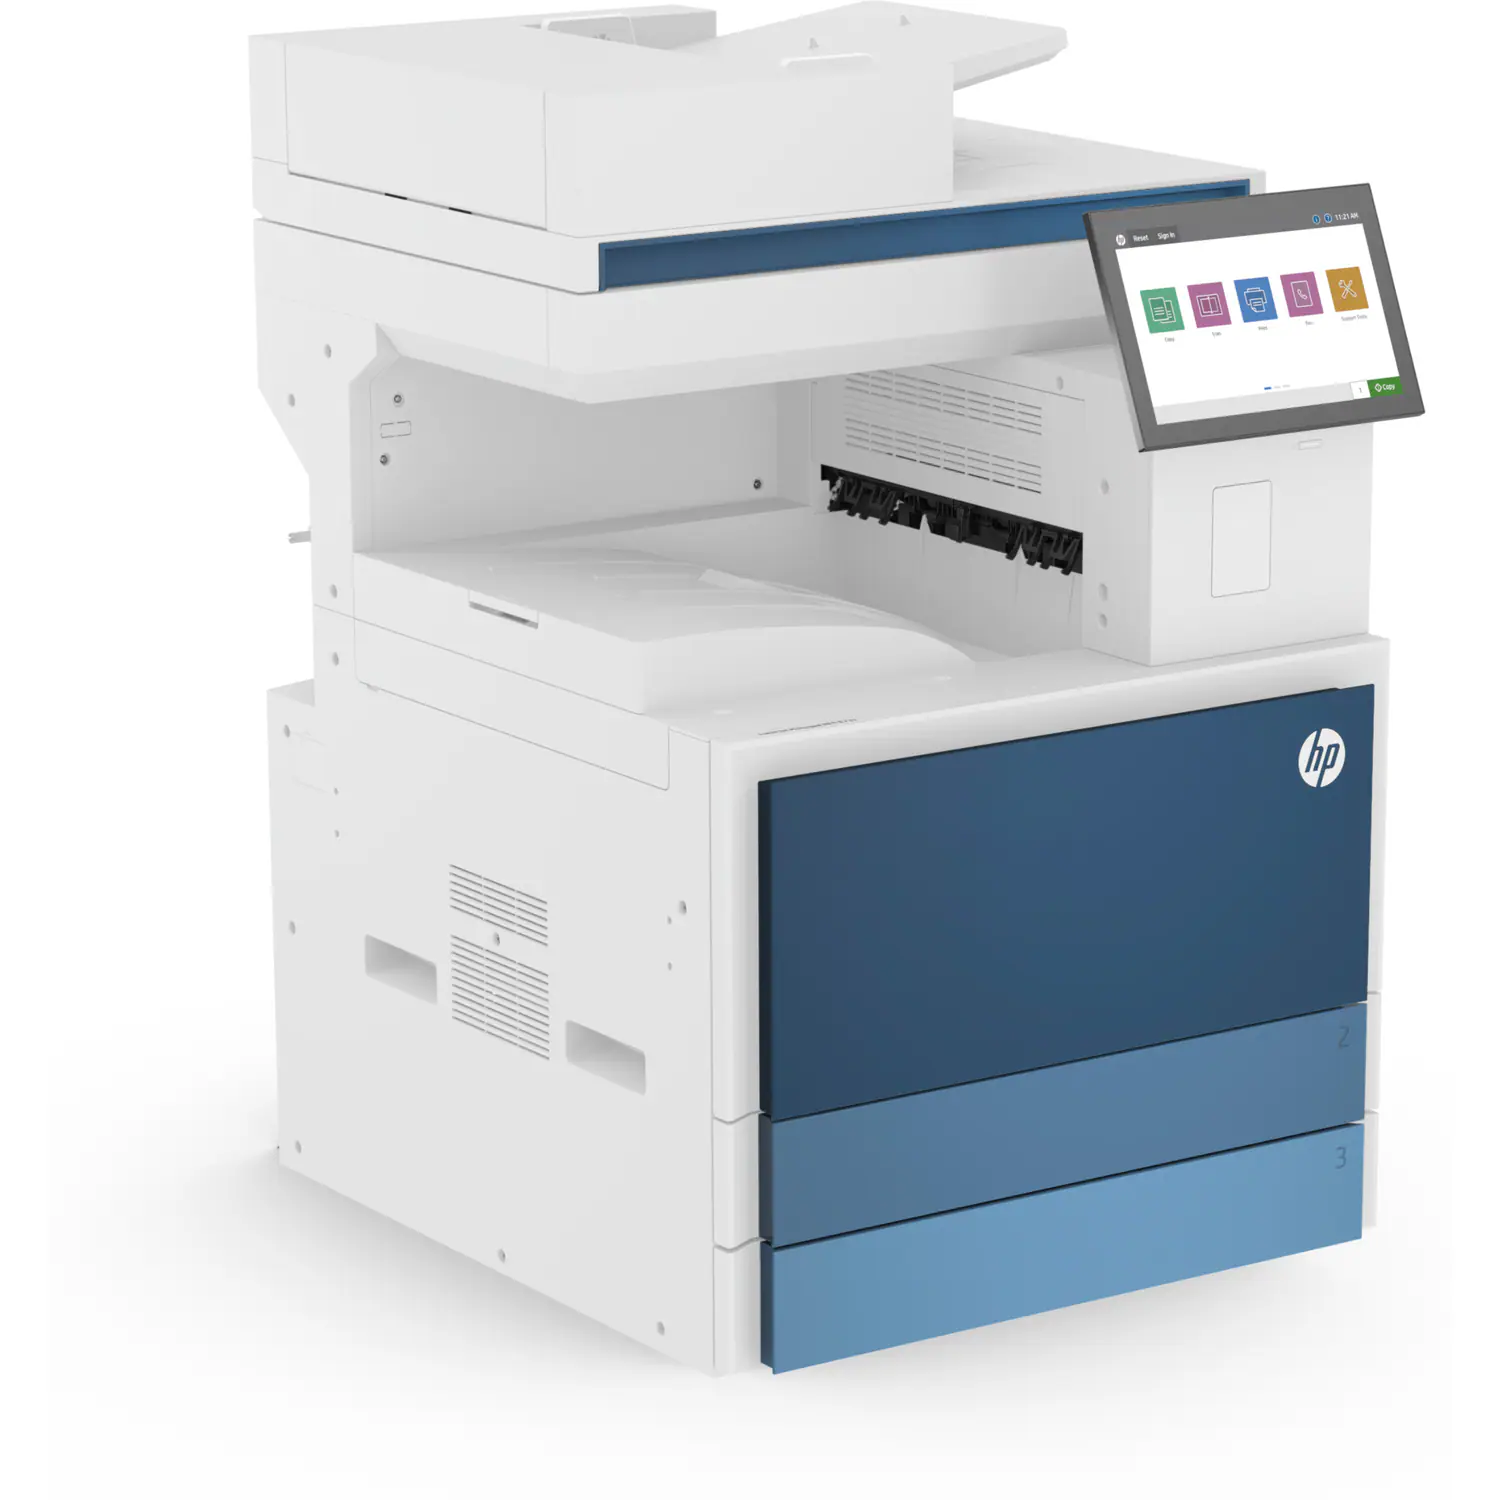 Máy Photocopy đen trắng đa chức năng HP LaserJet Managed MFP E826DN - 5QK09A + 8EP63AAE (60 trang/1 phút)